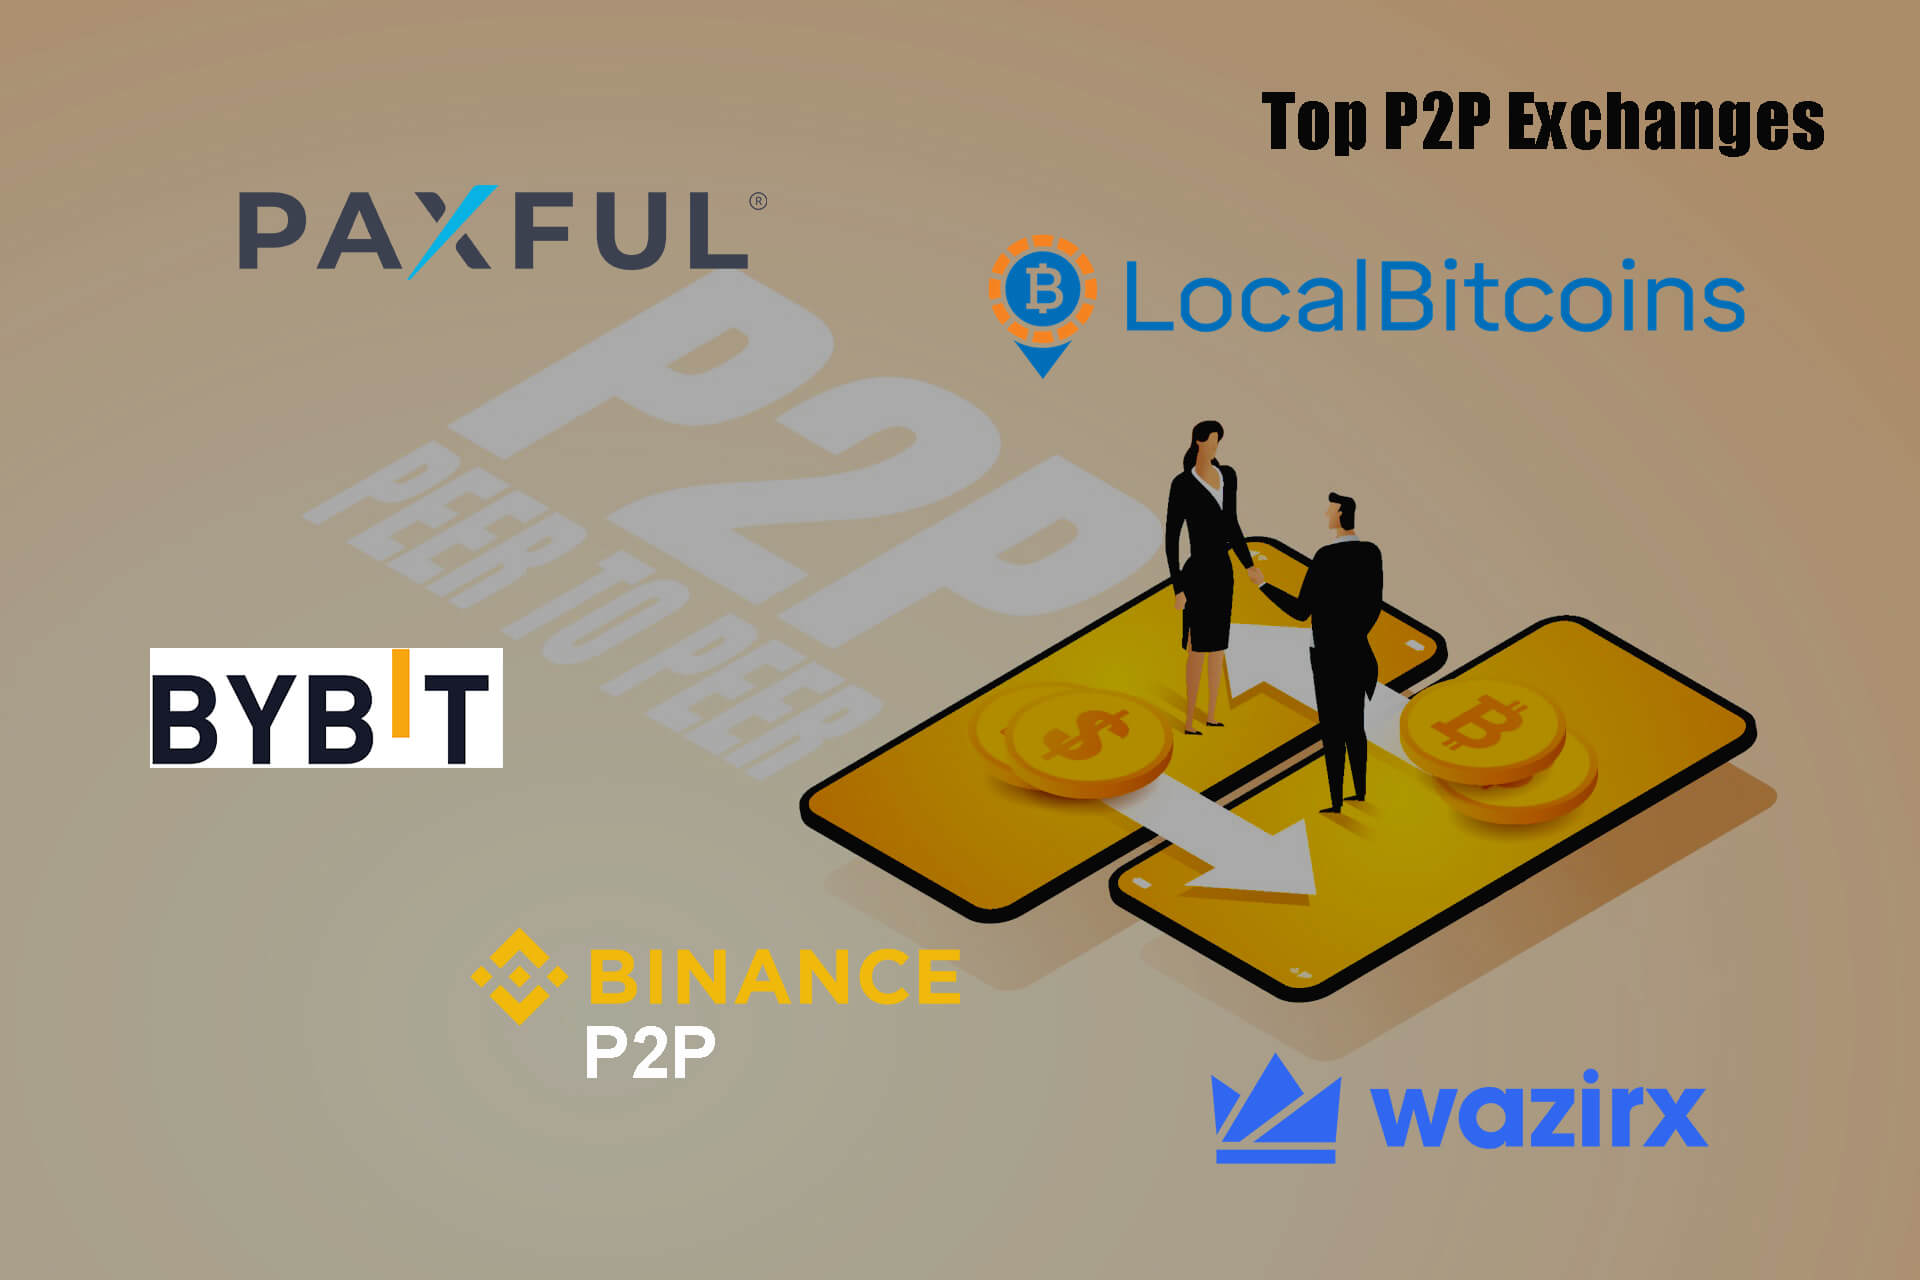 Top P2P Exchanges